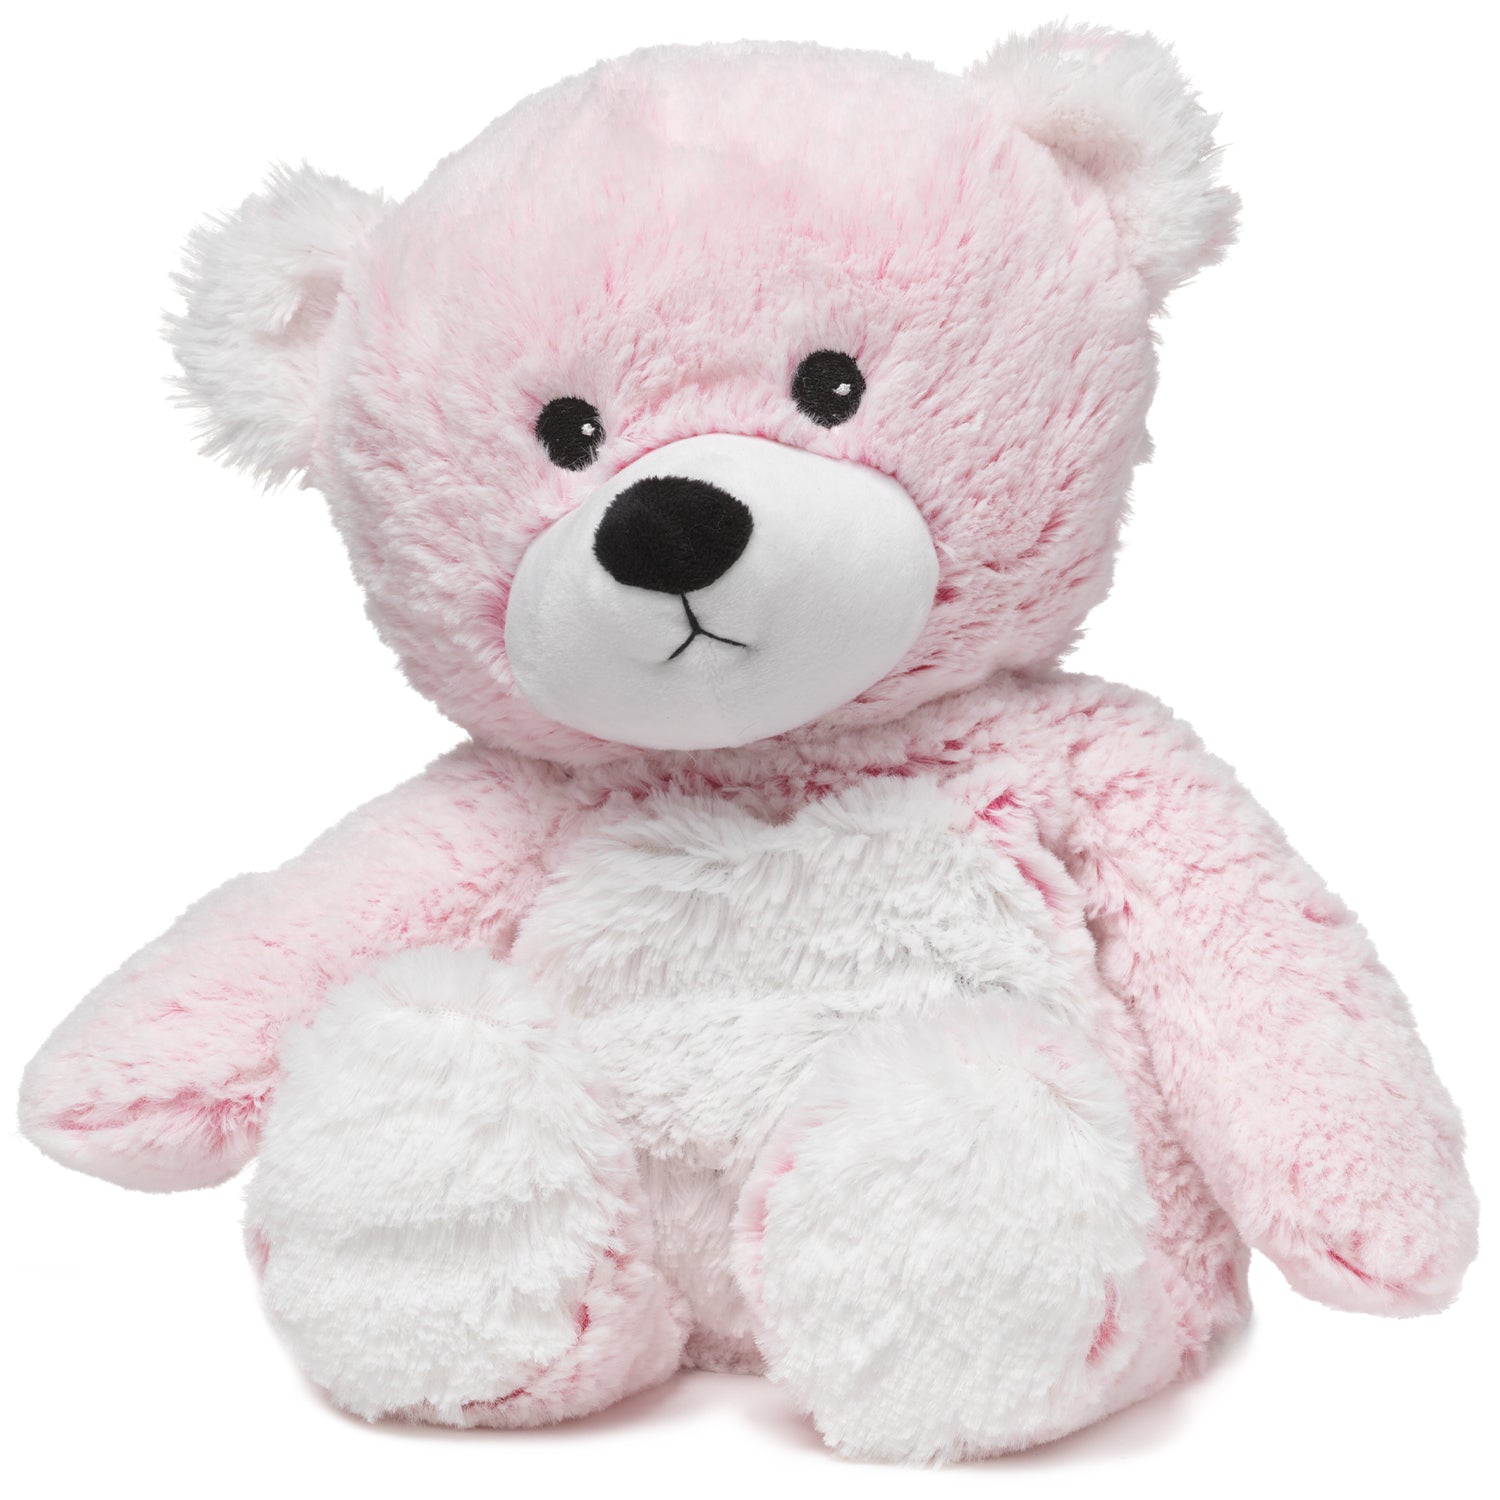 Warmies Plush Animal - Pink Bear